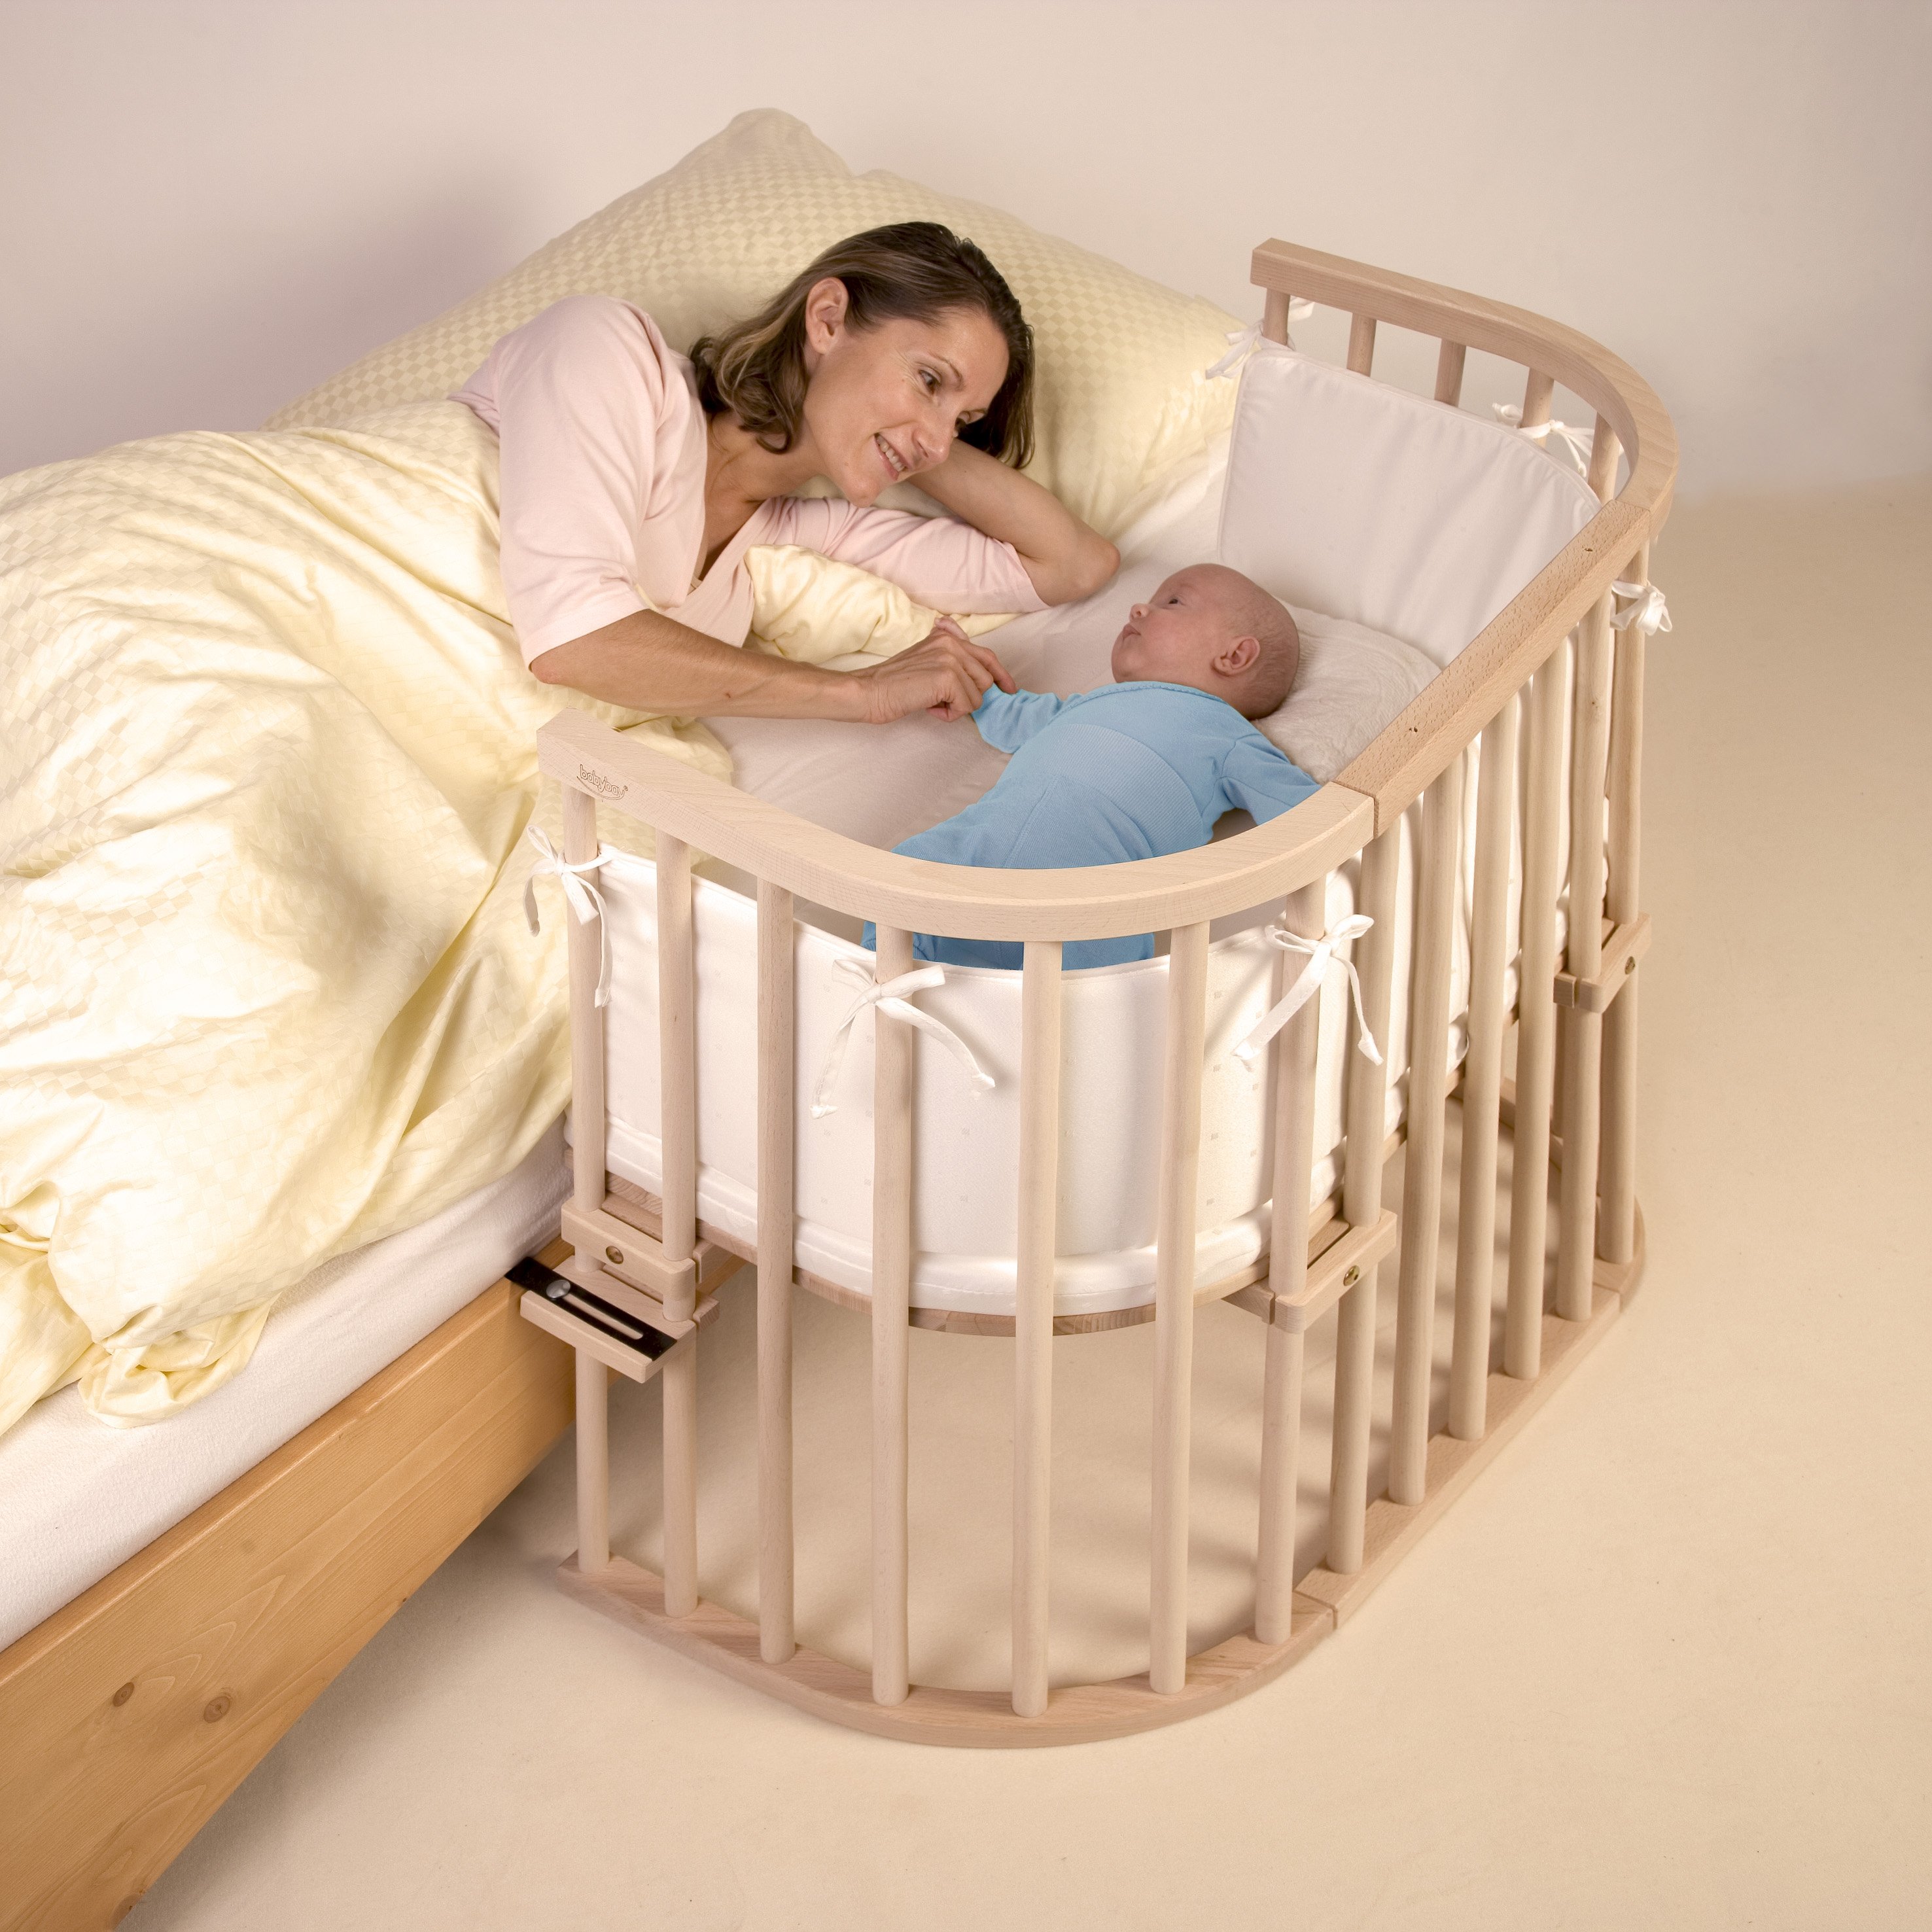 1 кровать с мамой. Кроватка babybay Original. Детская кровать babybay Tobi Original. Кровать детская Baby Crib. Babybay Maxi.